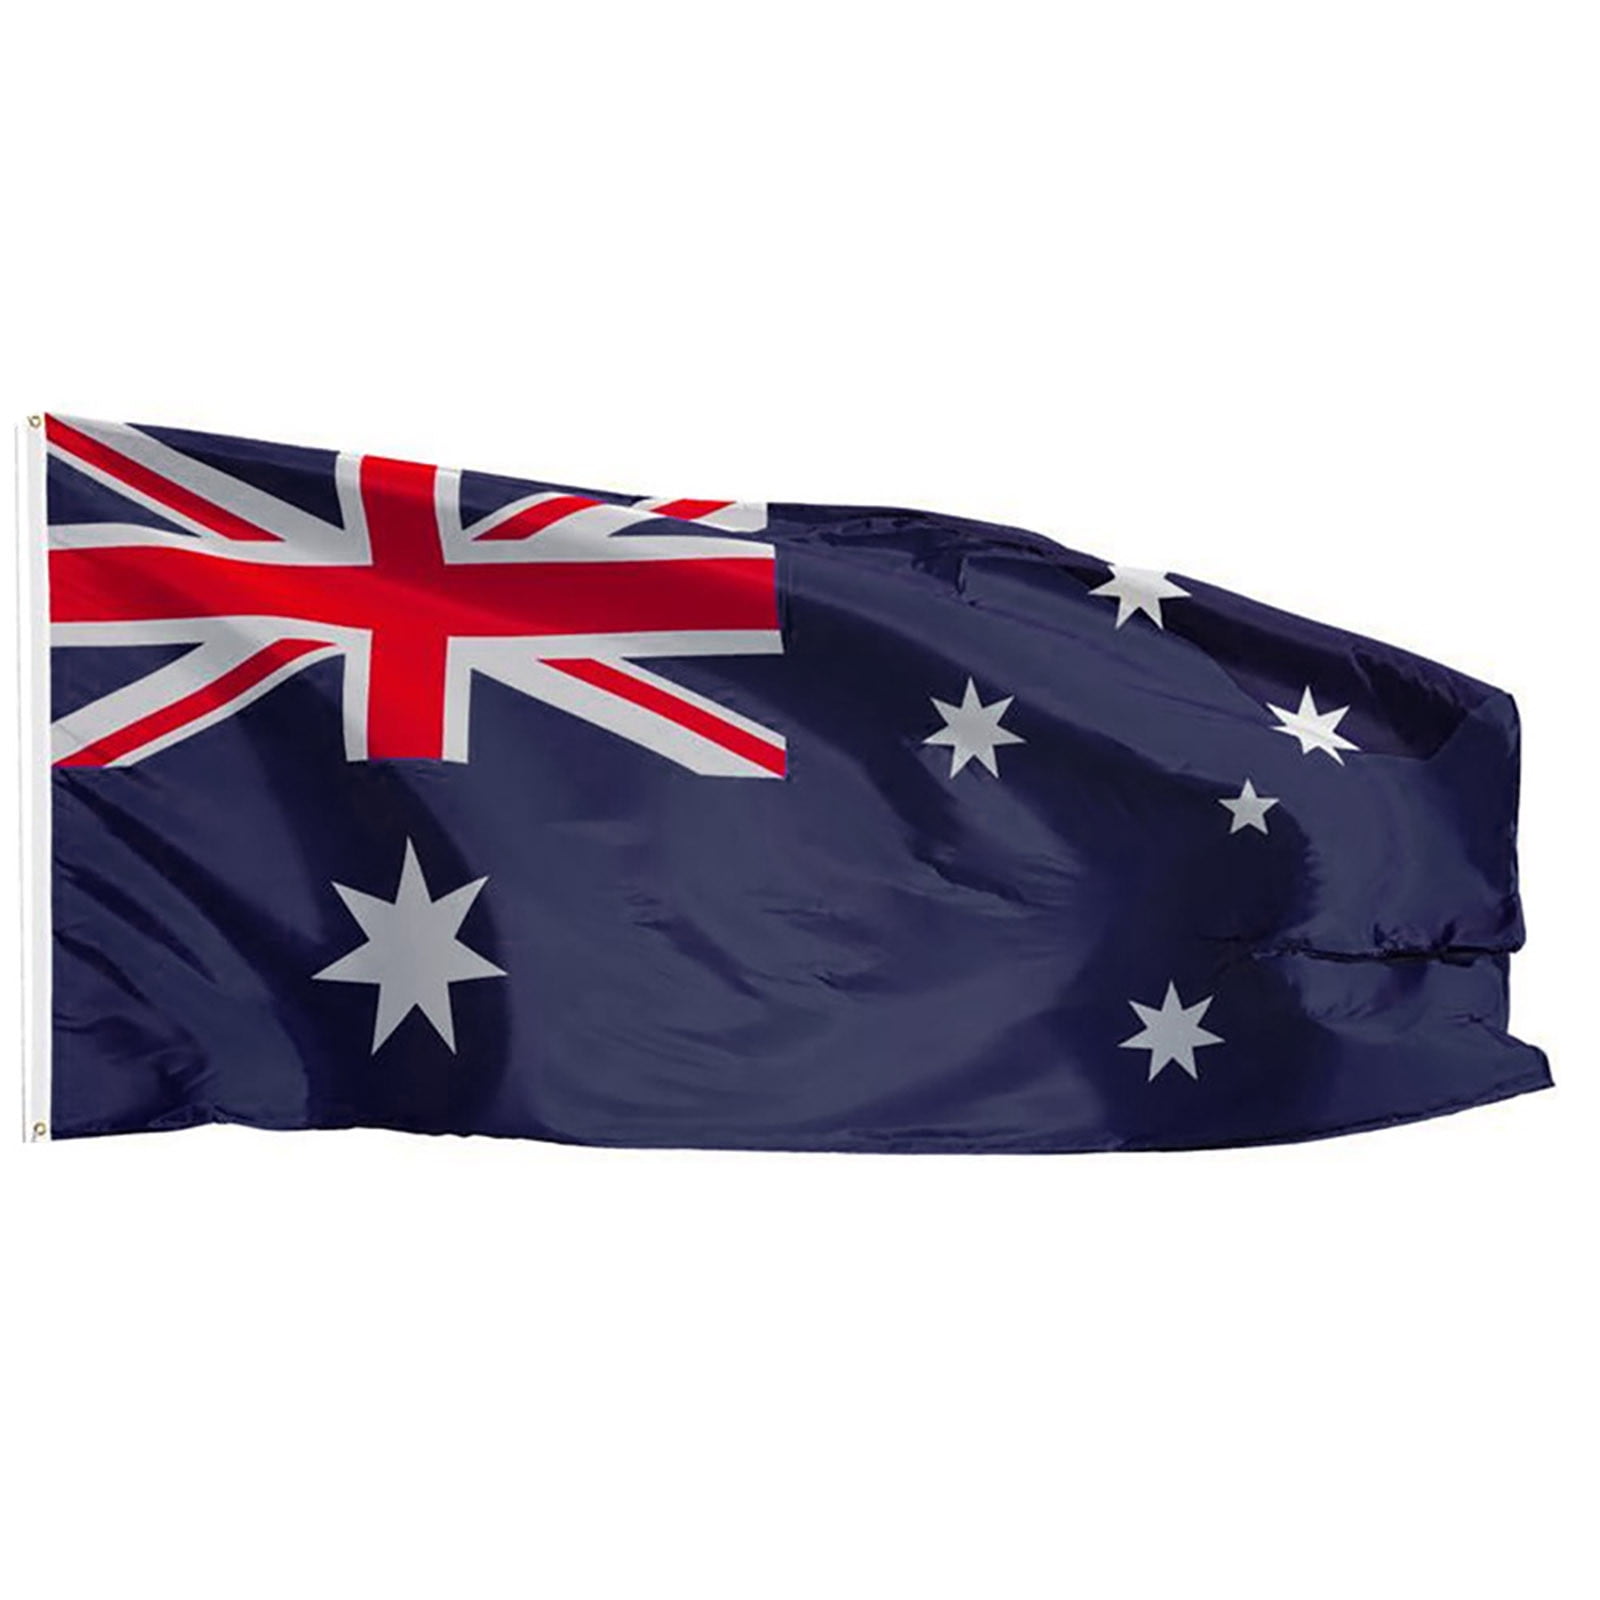 NEW 3X5ft AUSTRALIA FLAG AUSTRALIAN FOOTBALL BANNER satin material 90x150cm 